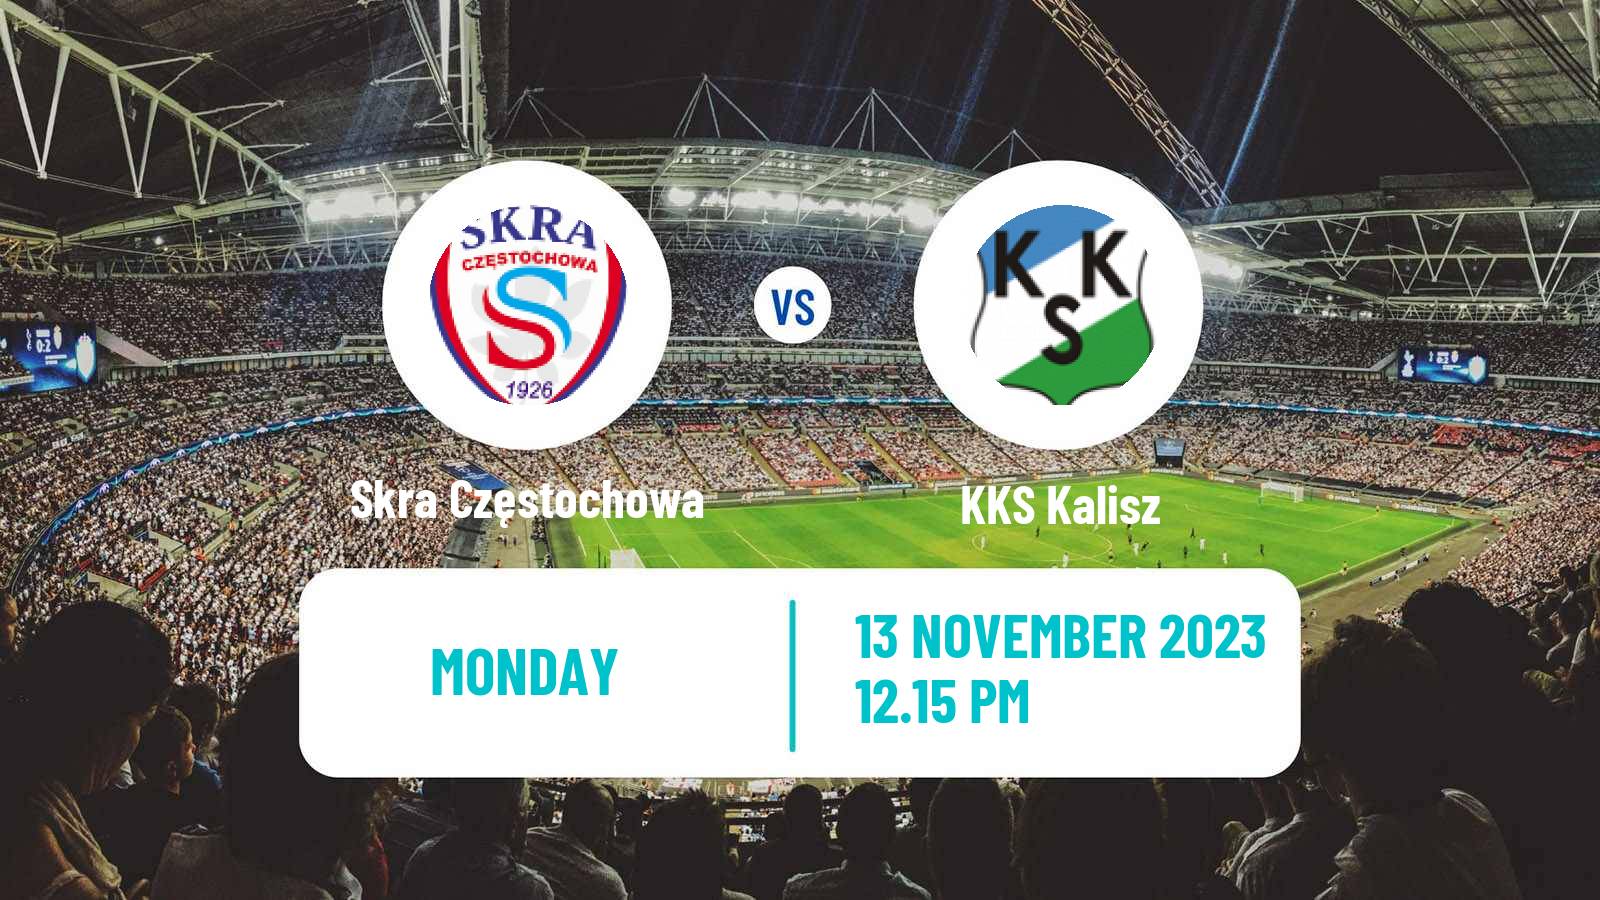 Soccer Polish Division 2 Skra Częstochowa - KKS Kalisz